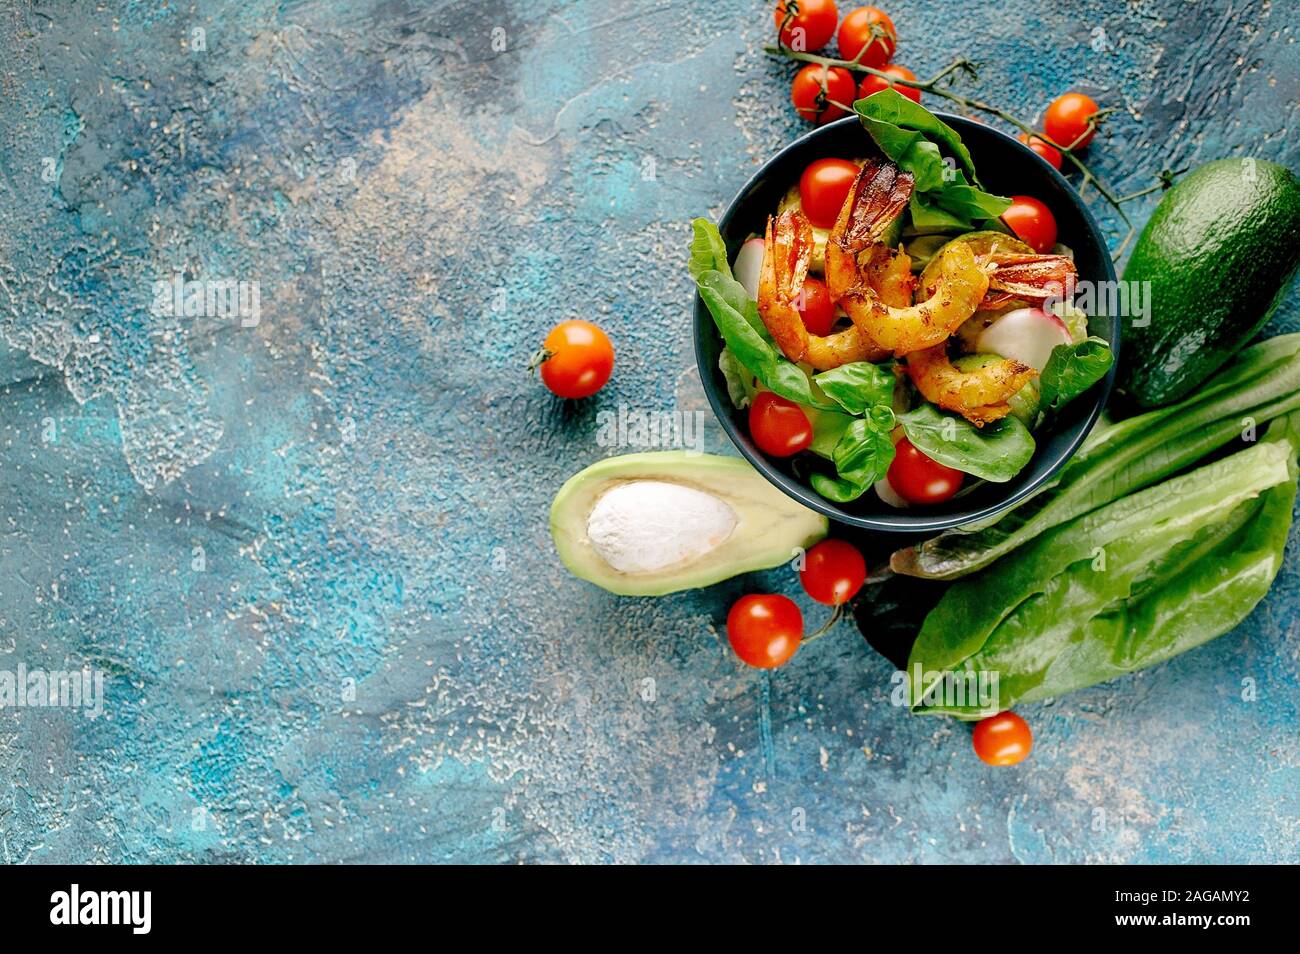 Coup horizontal avec crevettes frites salade appétissante, Avocat, tomates cerises, radis et le basilic. Savoureux et sain de fruits de mer. Copy space Banque D'Images